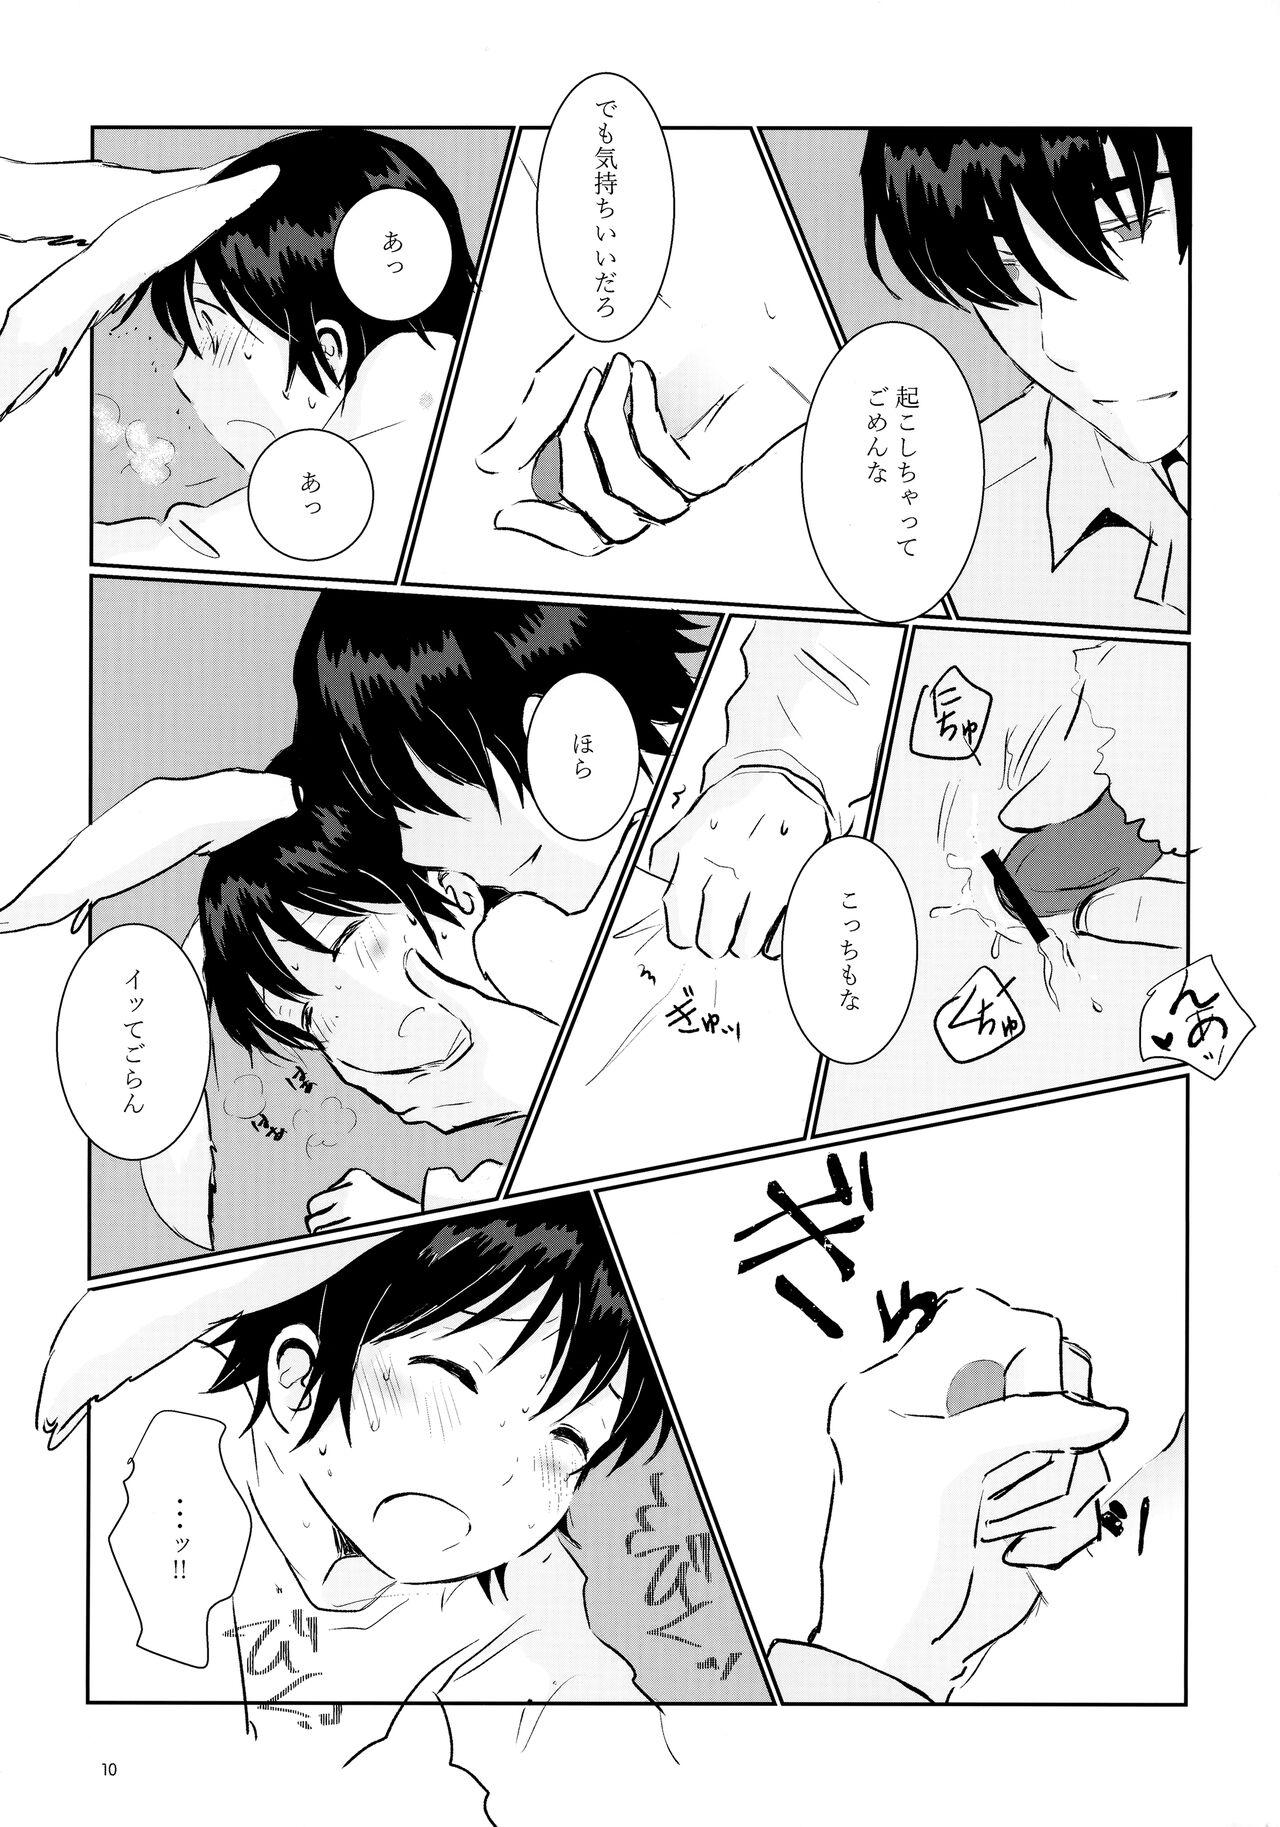 Piercing Usagi no Shippo - Boku dake ga inai machi | erased Kissing - Page 10